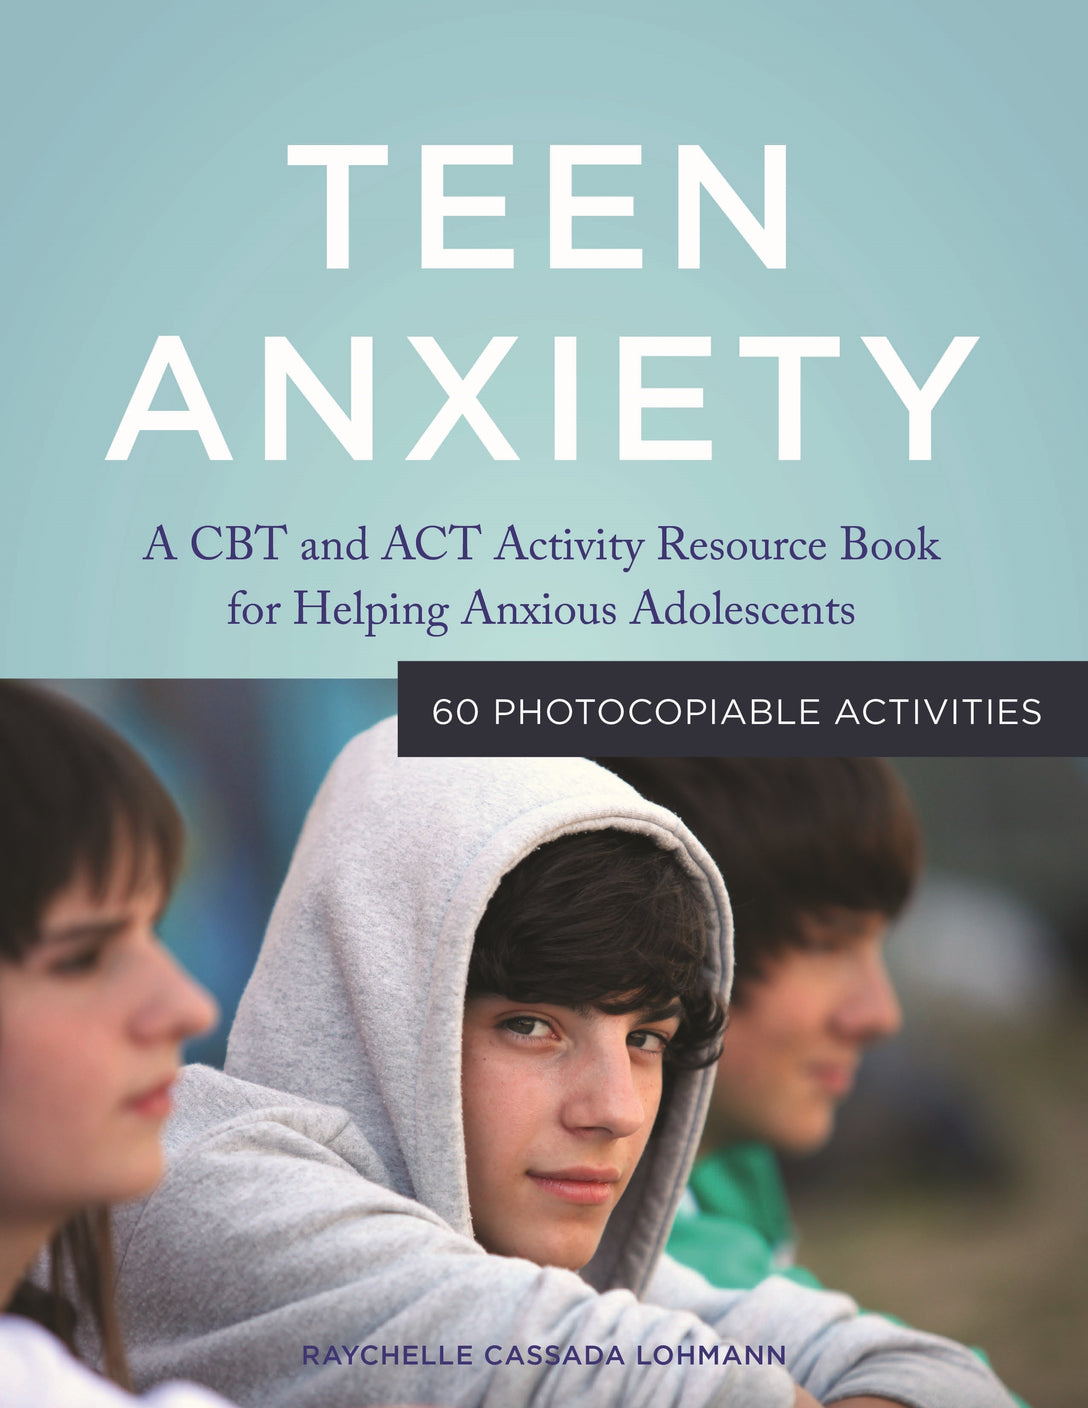 Teen Anxiety by Raychelle Cassada Cassada Lohmann